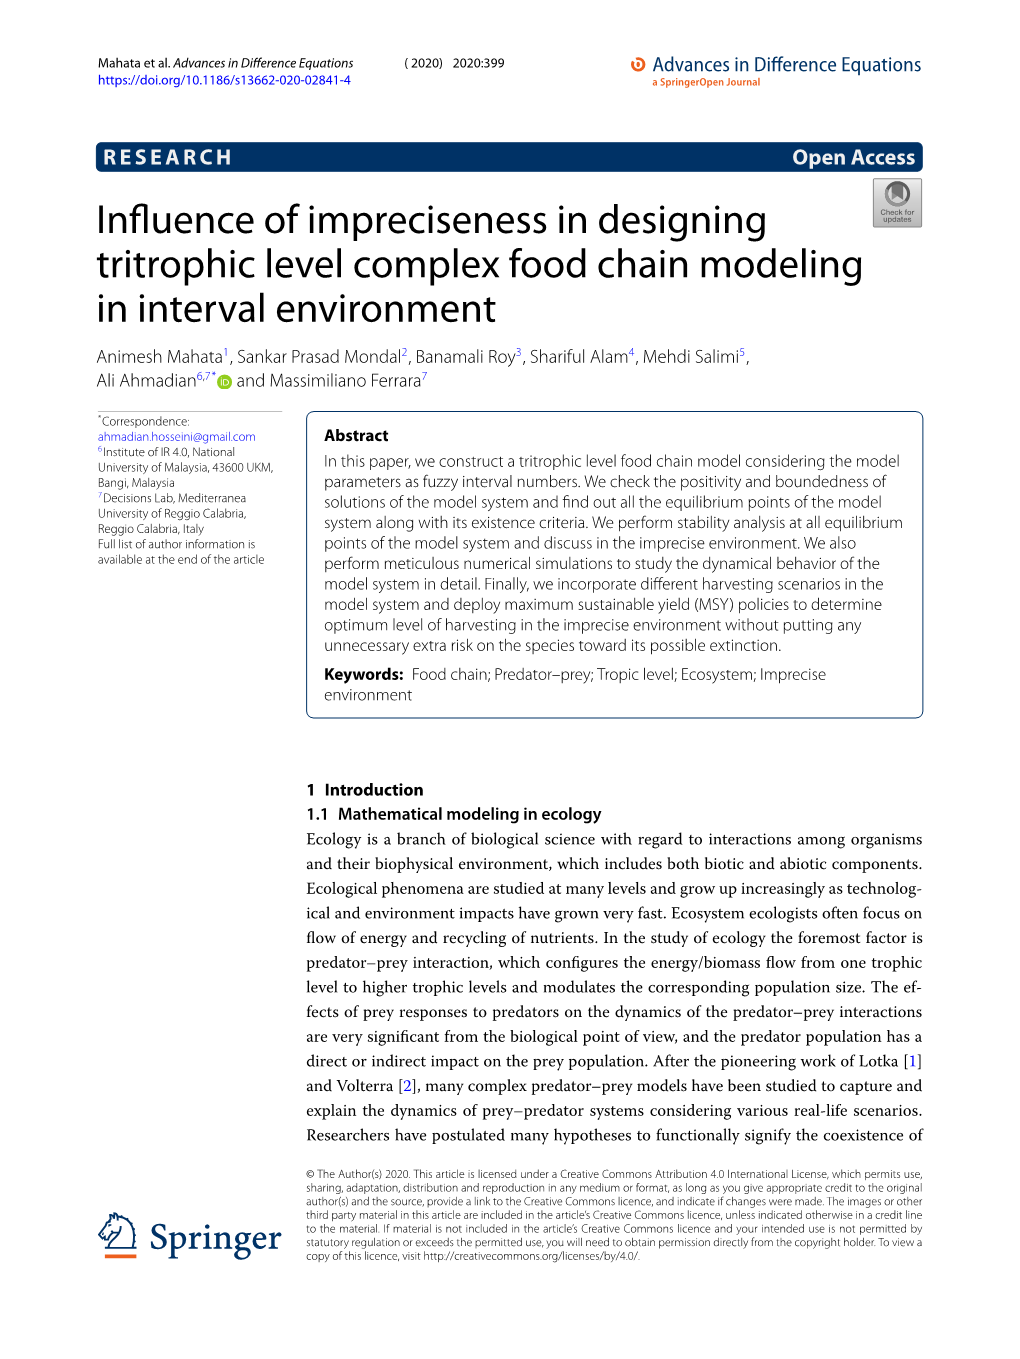 Influence of Impreciseness in Designing Tritrophic Level Complex